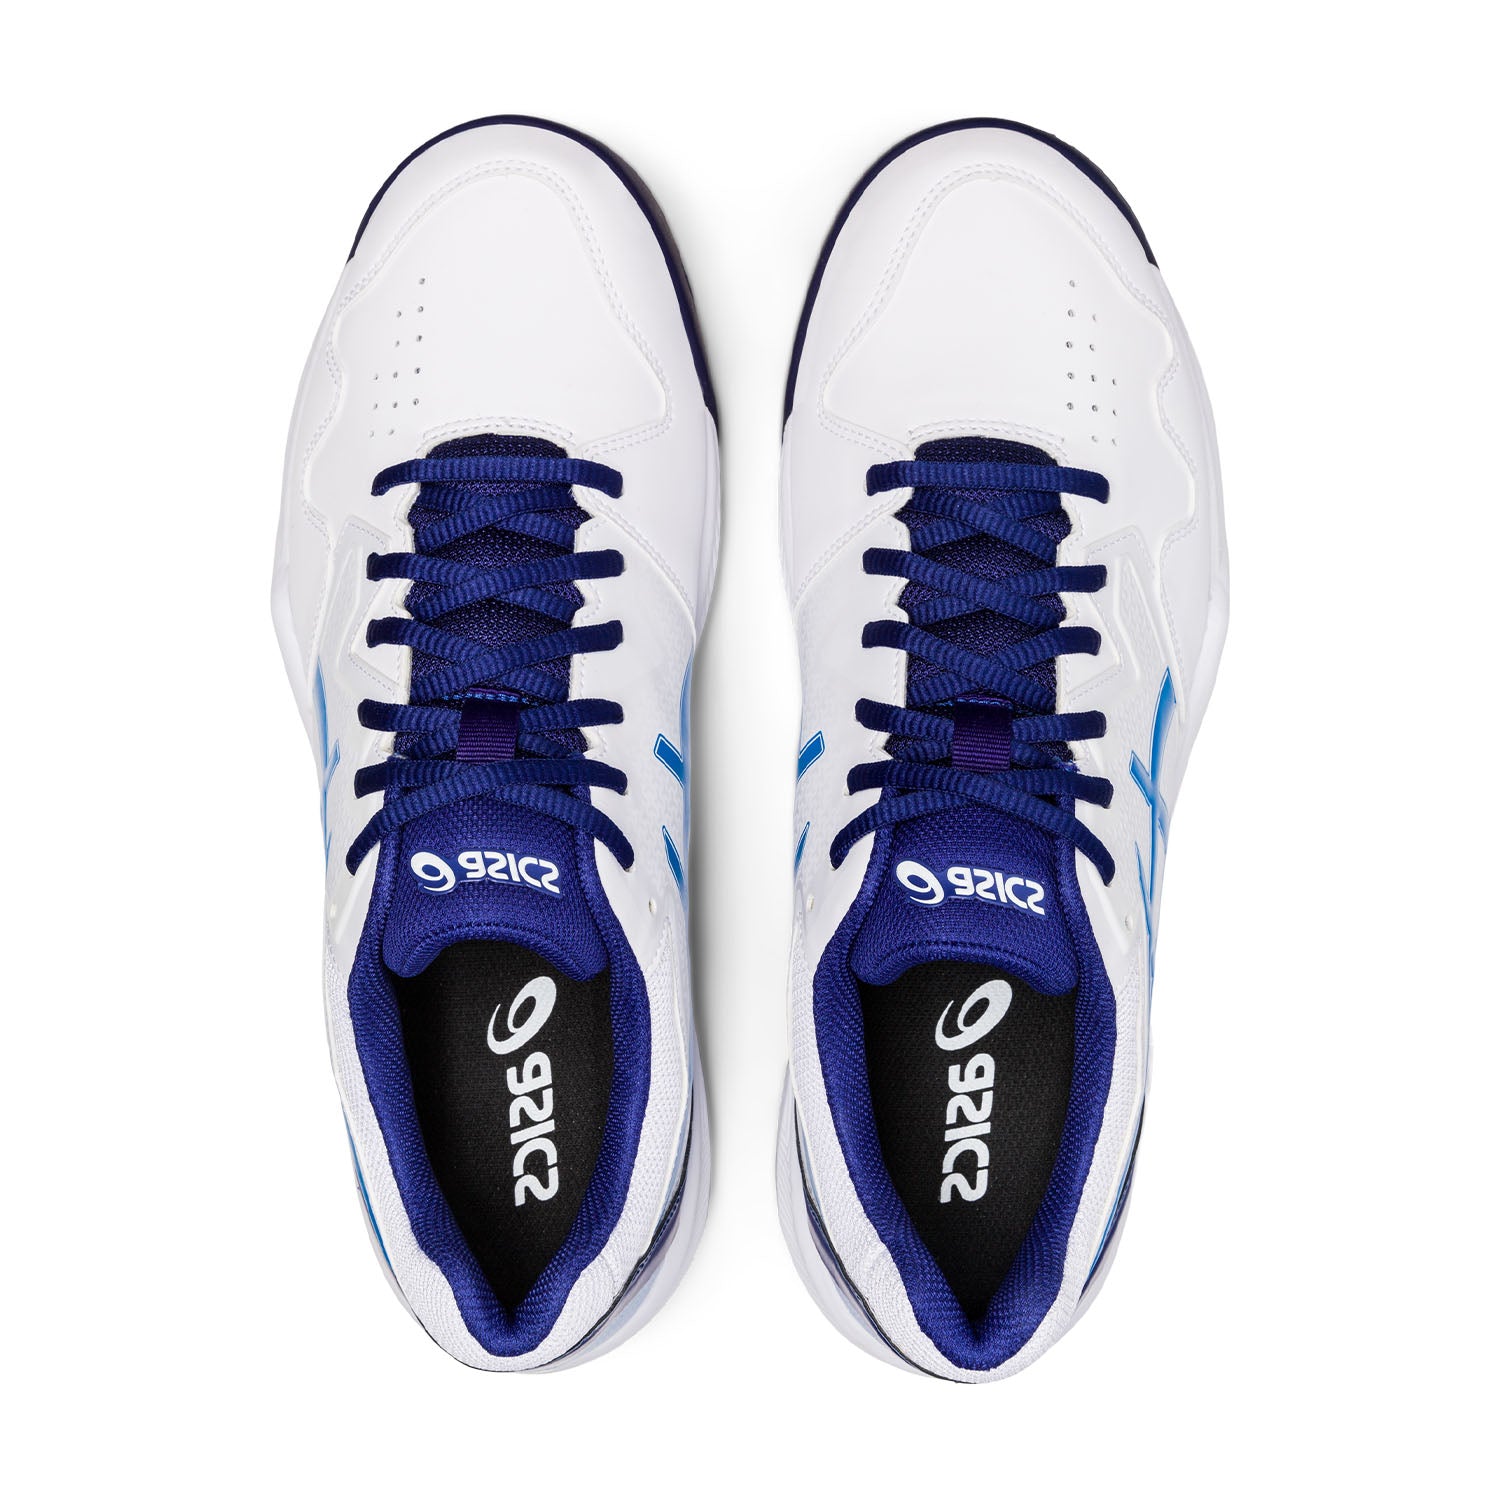 Asics scarpa da Tennis da uomo Gel Dedicate 7 1041A223 103 bianco blu